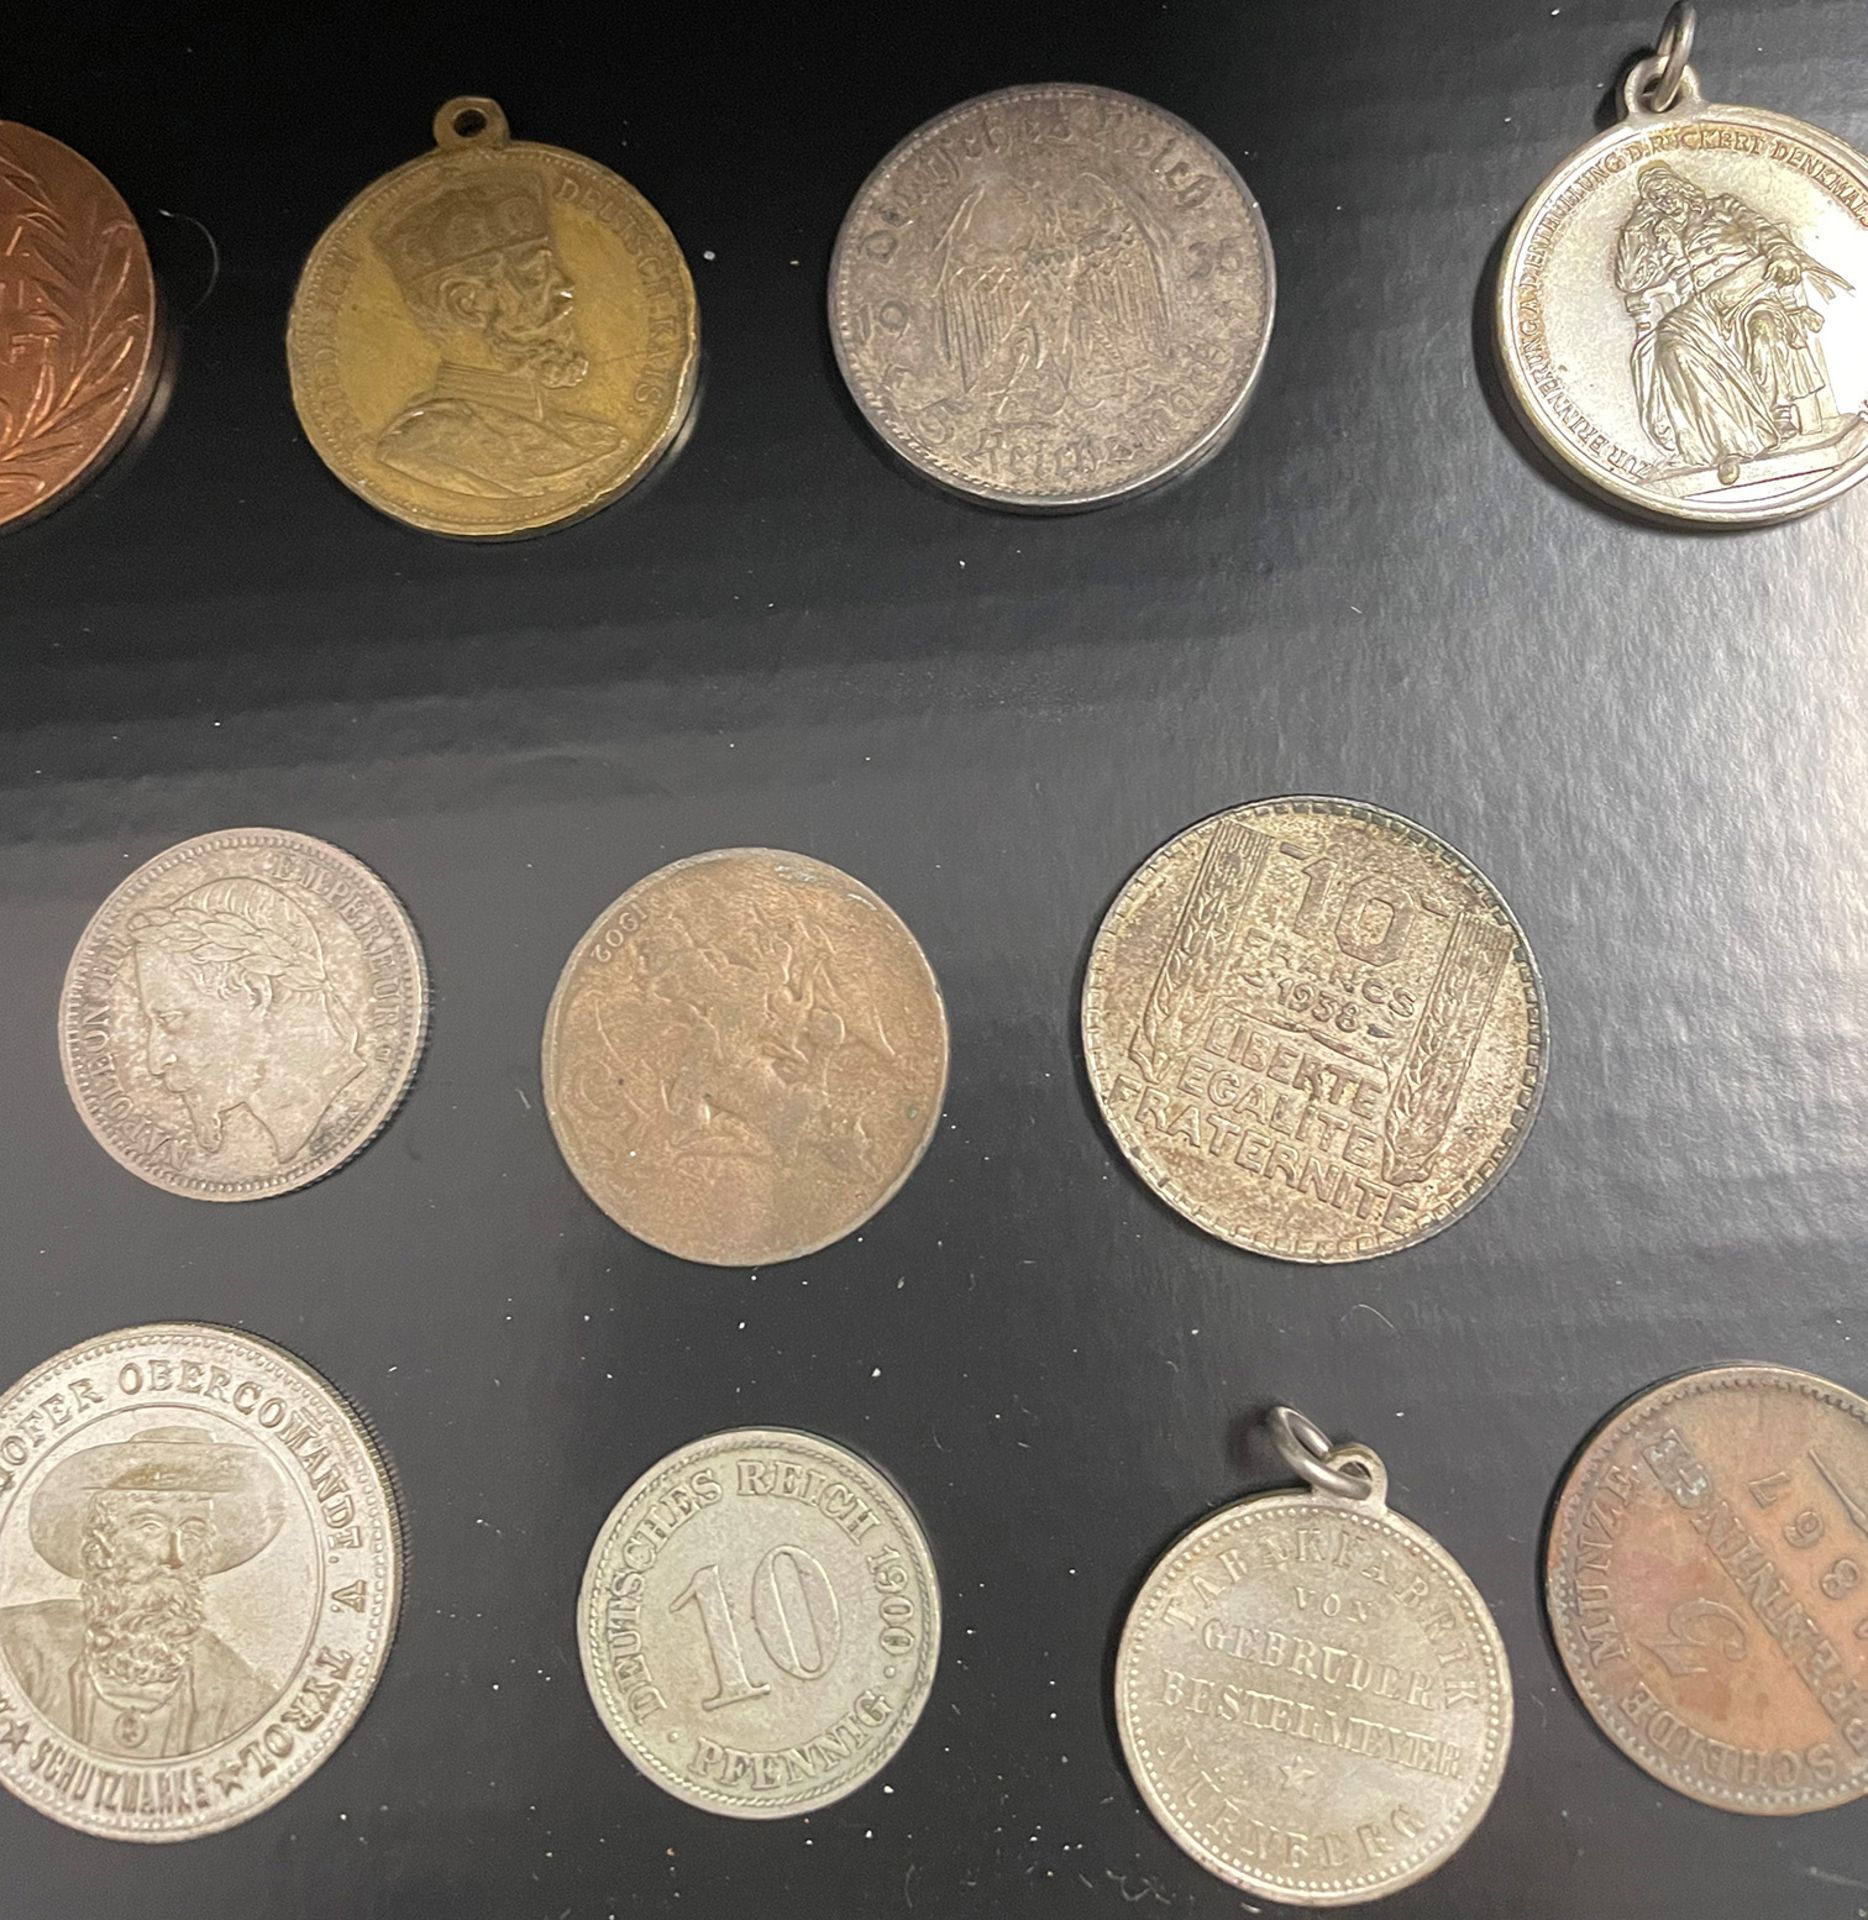 Konvolut Münzen, Medaillen, Münzanhänger, Sammlungsauflösung, darunter: 1 x 5 Dollar 1988, Canada, - Bild 17 aus 26